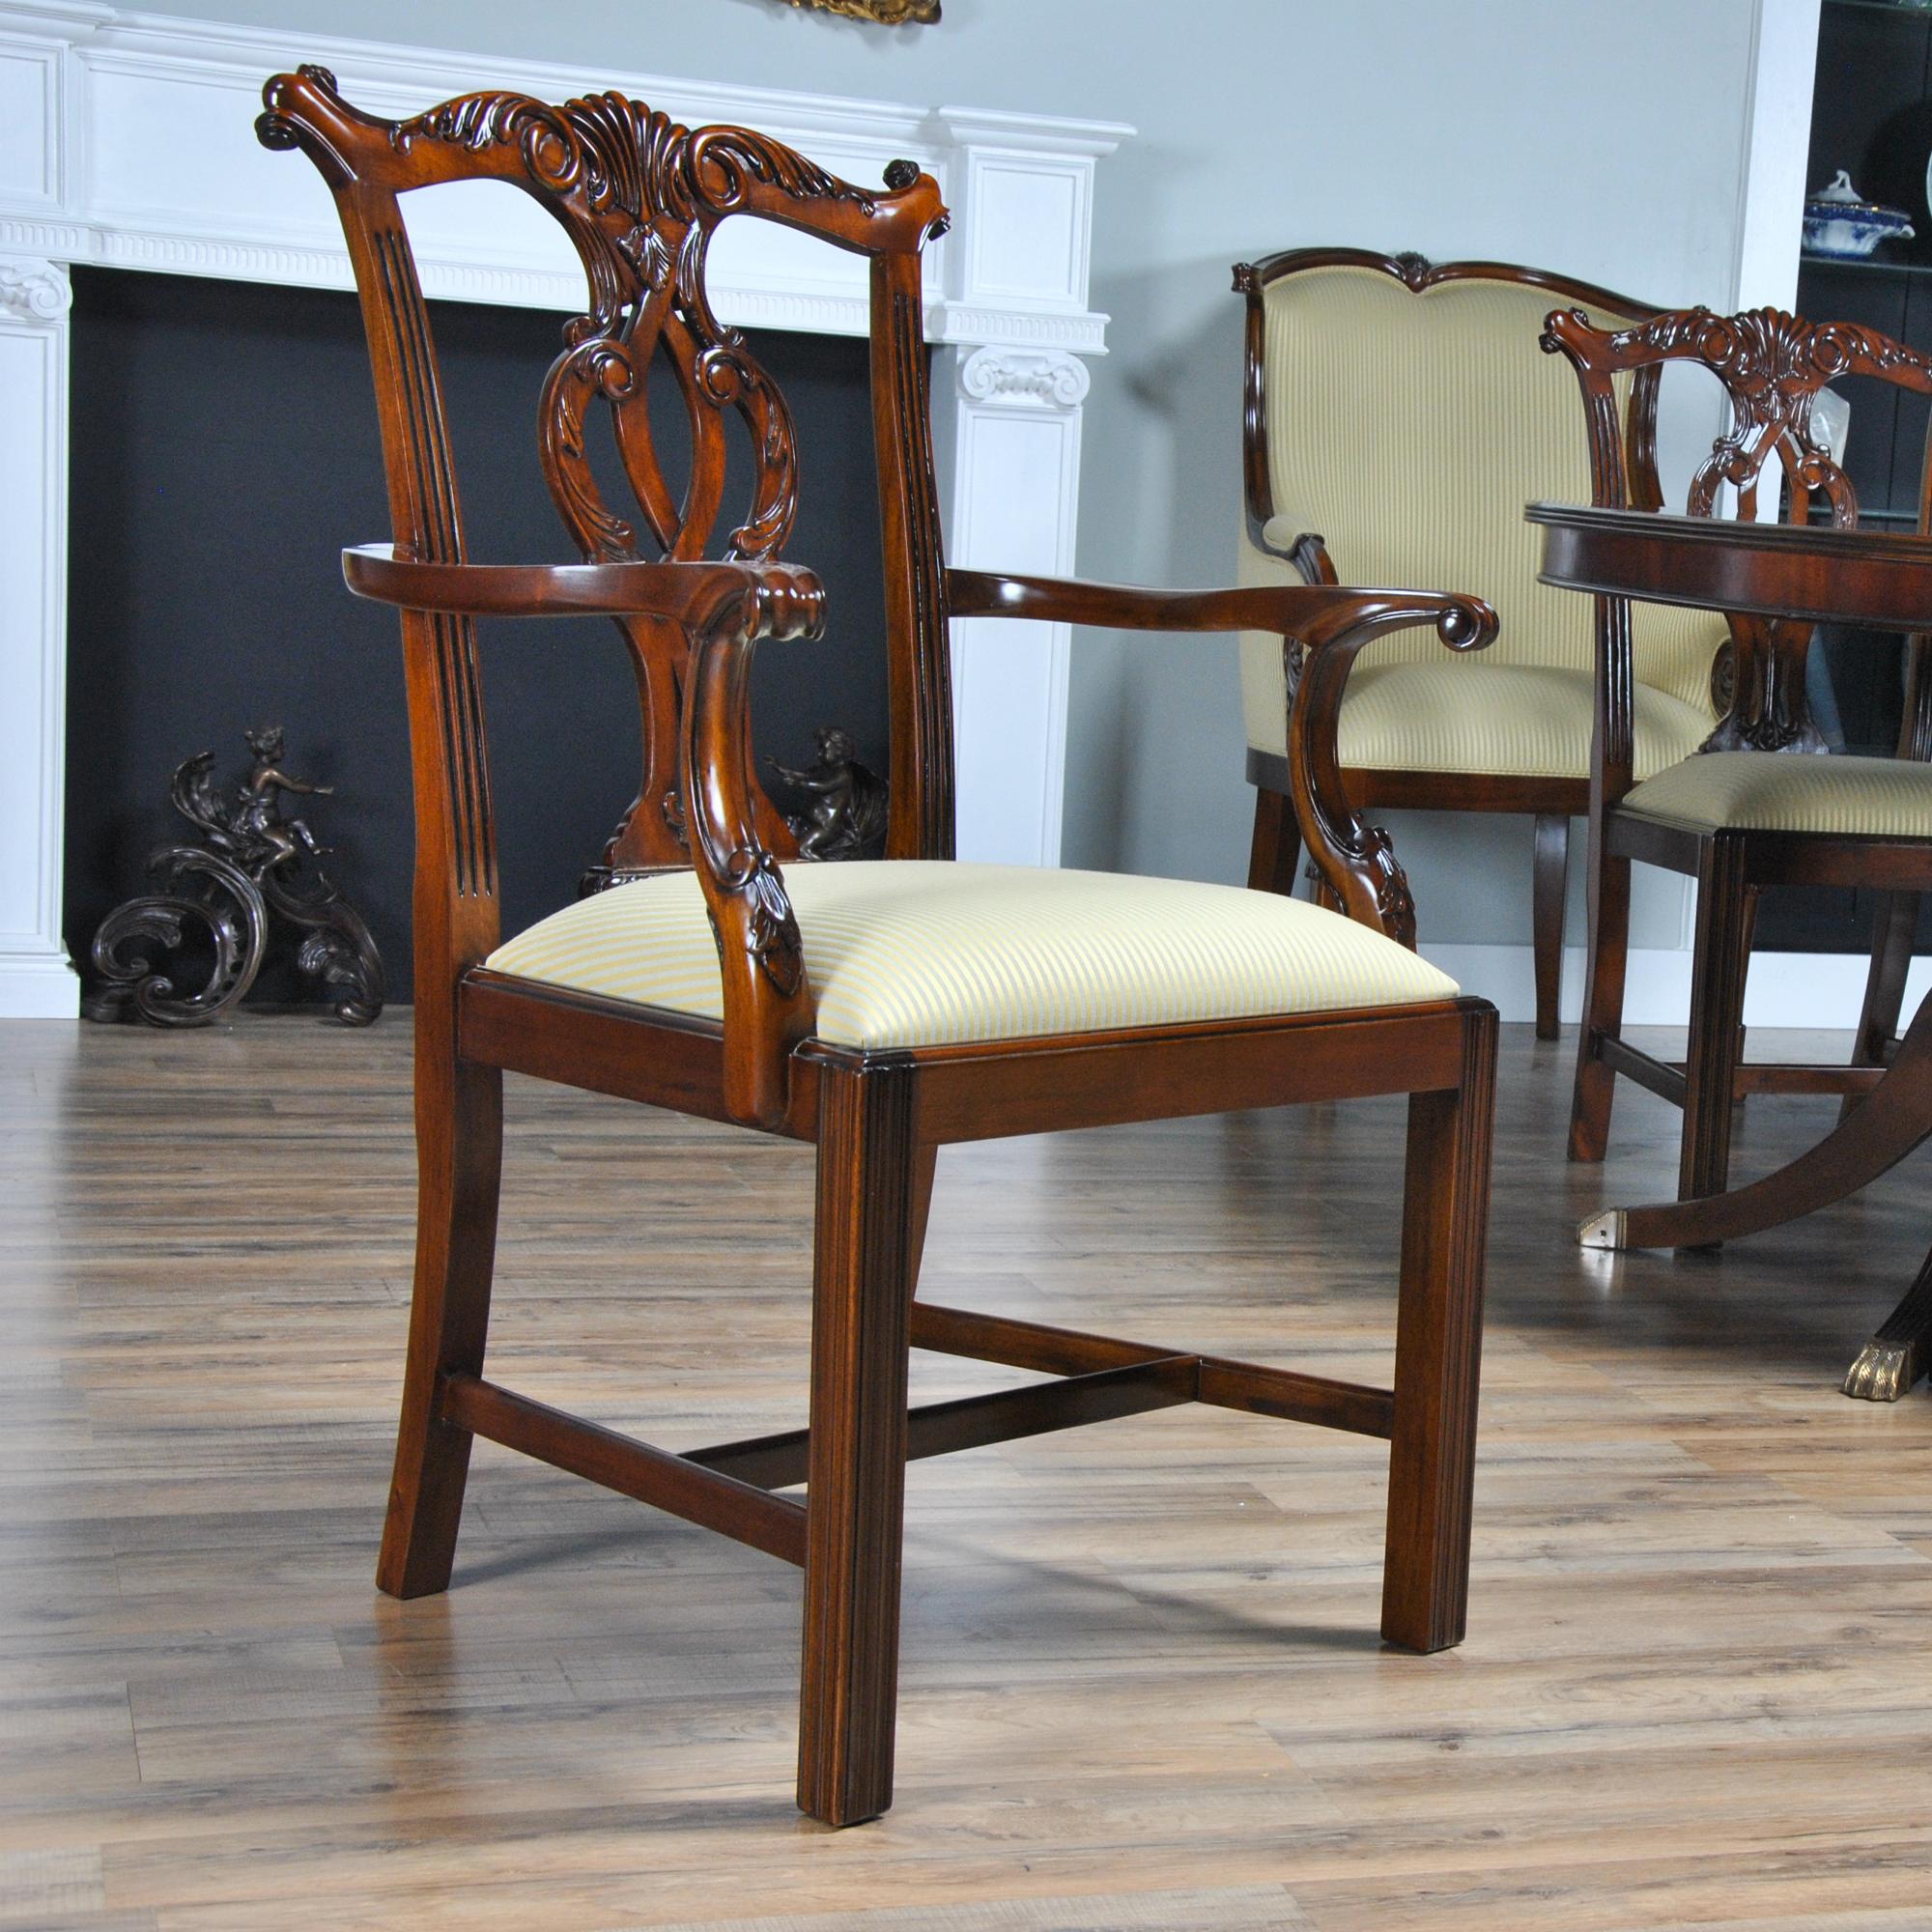 Ein Satz von zehn Chippendale-Stühlen aus massivem Mahagoni, bestehend aus 2 Sesseln und 8 Beistellstühlen. Jeder Stuhl hat serpentinenförmige Kammschienen und  handgeschnitzte und durchbrochene Rückenlehnen aus massivem Mahagoni. Die Sessel